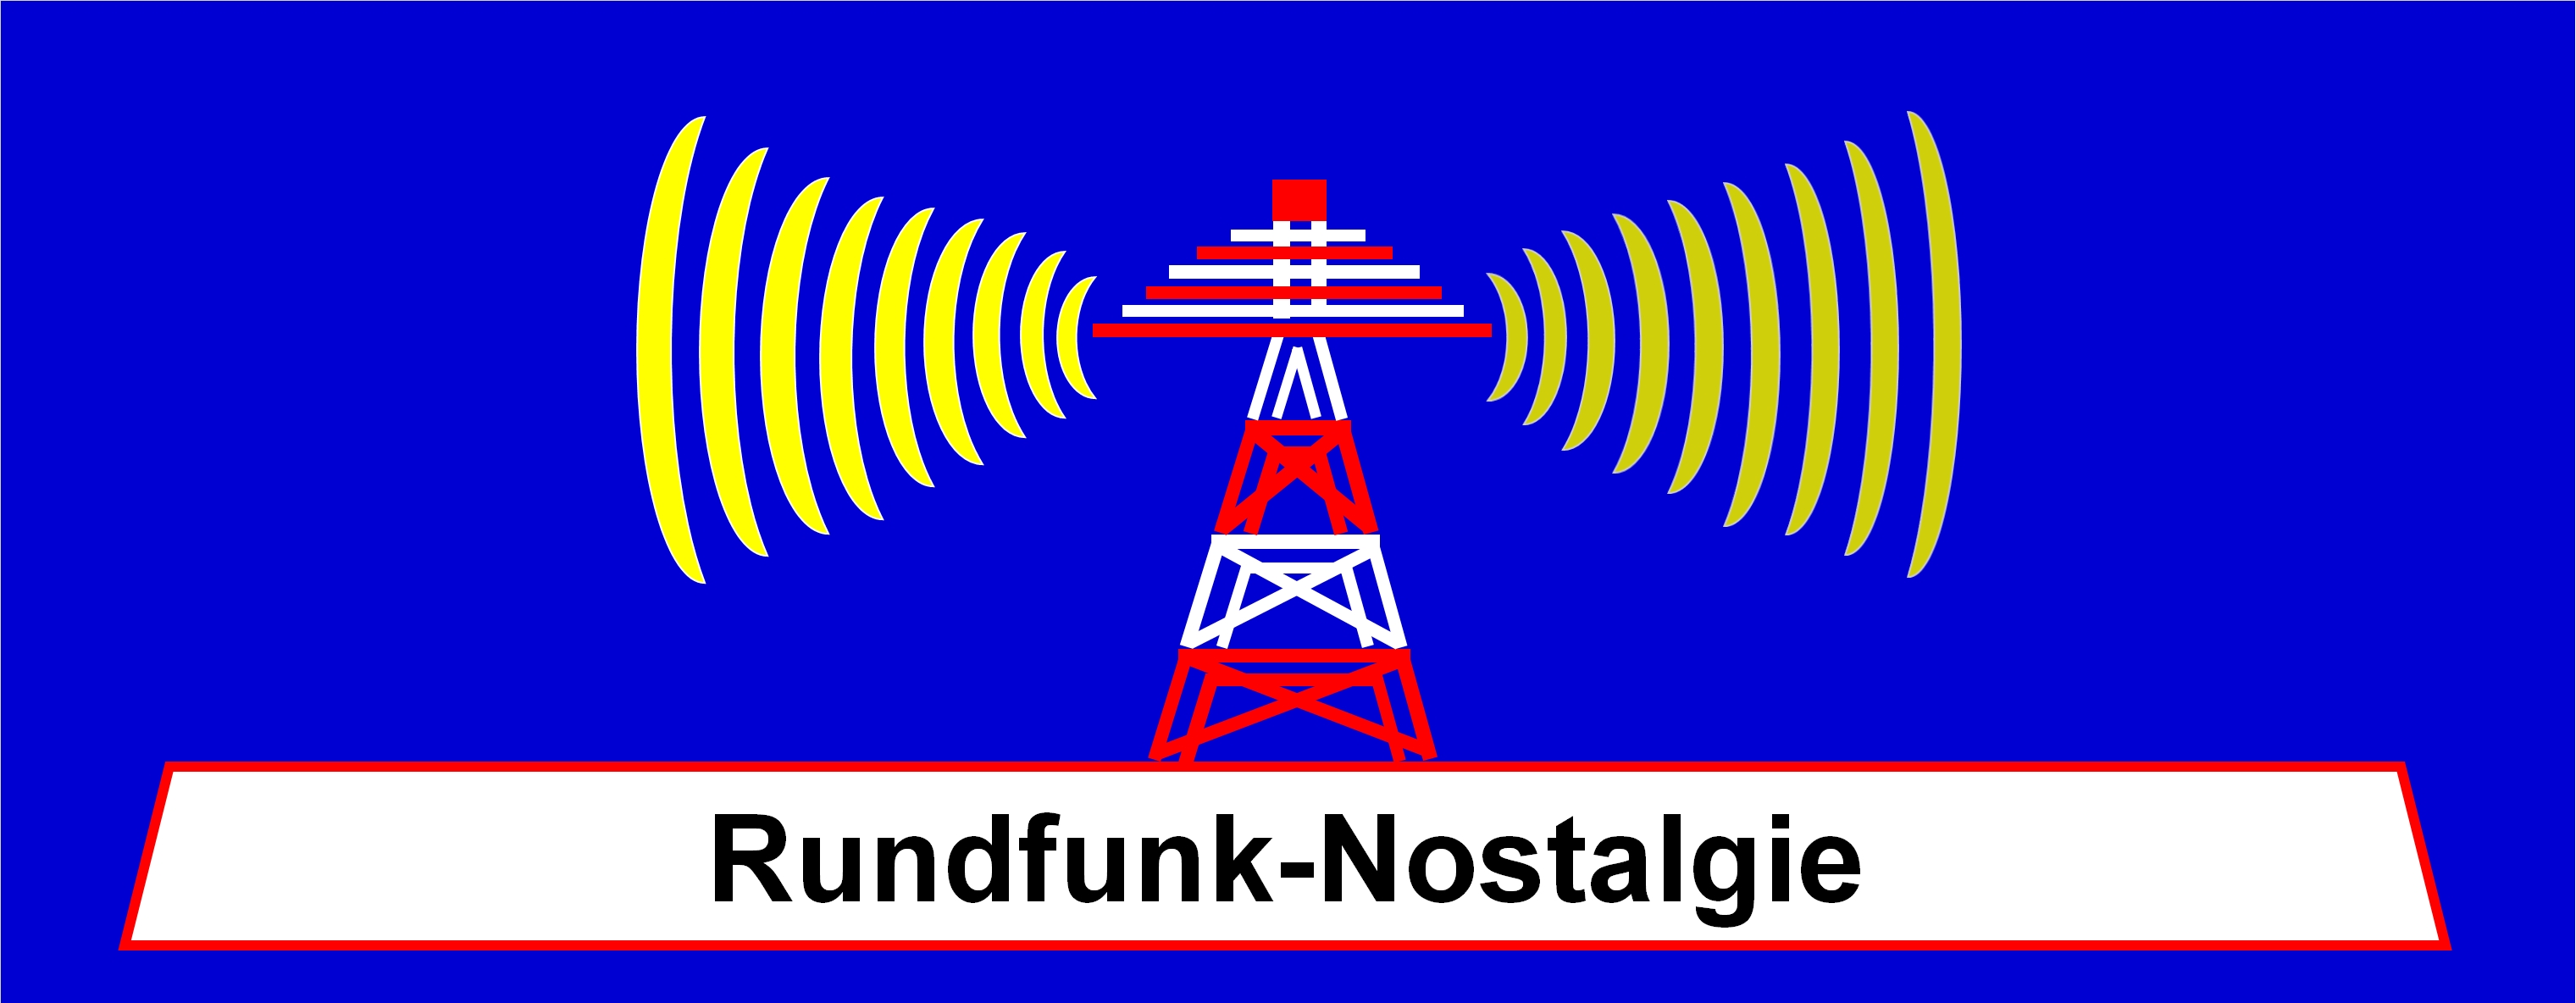 Rundfunk-Nostalgie